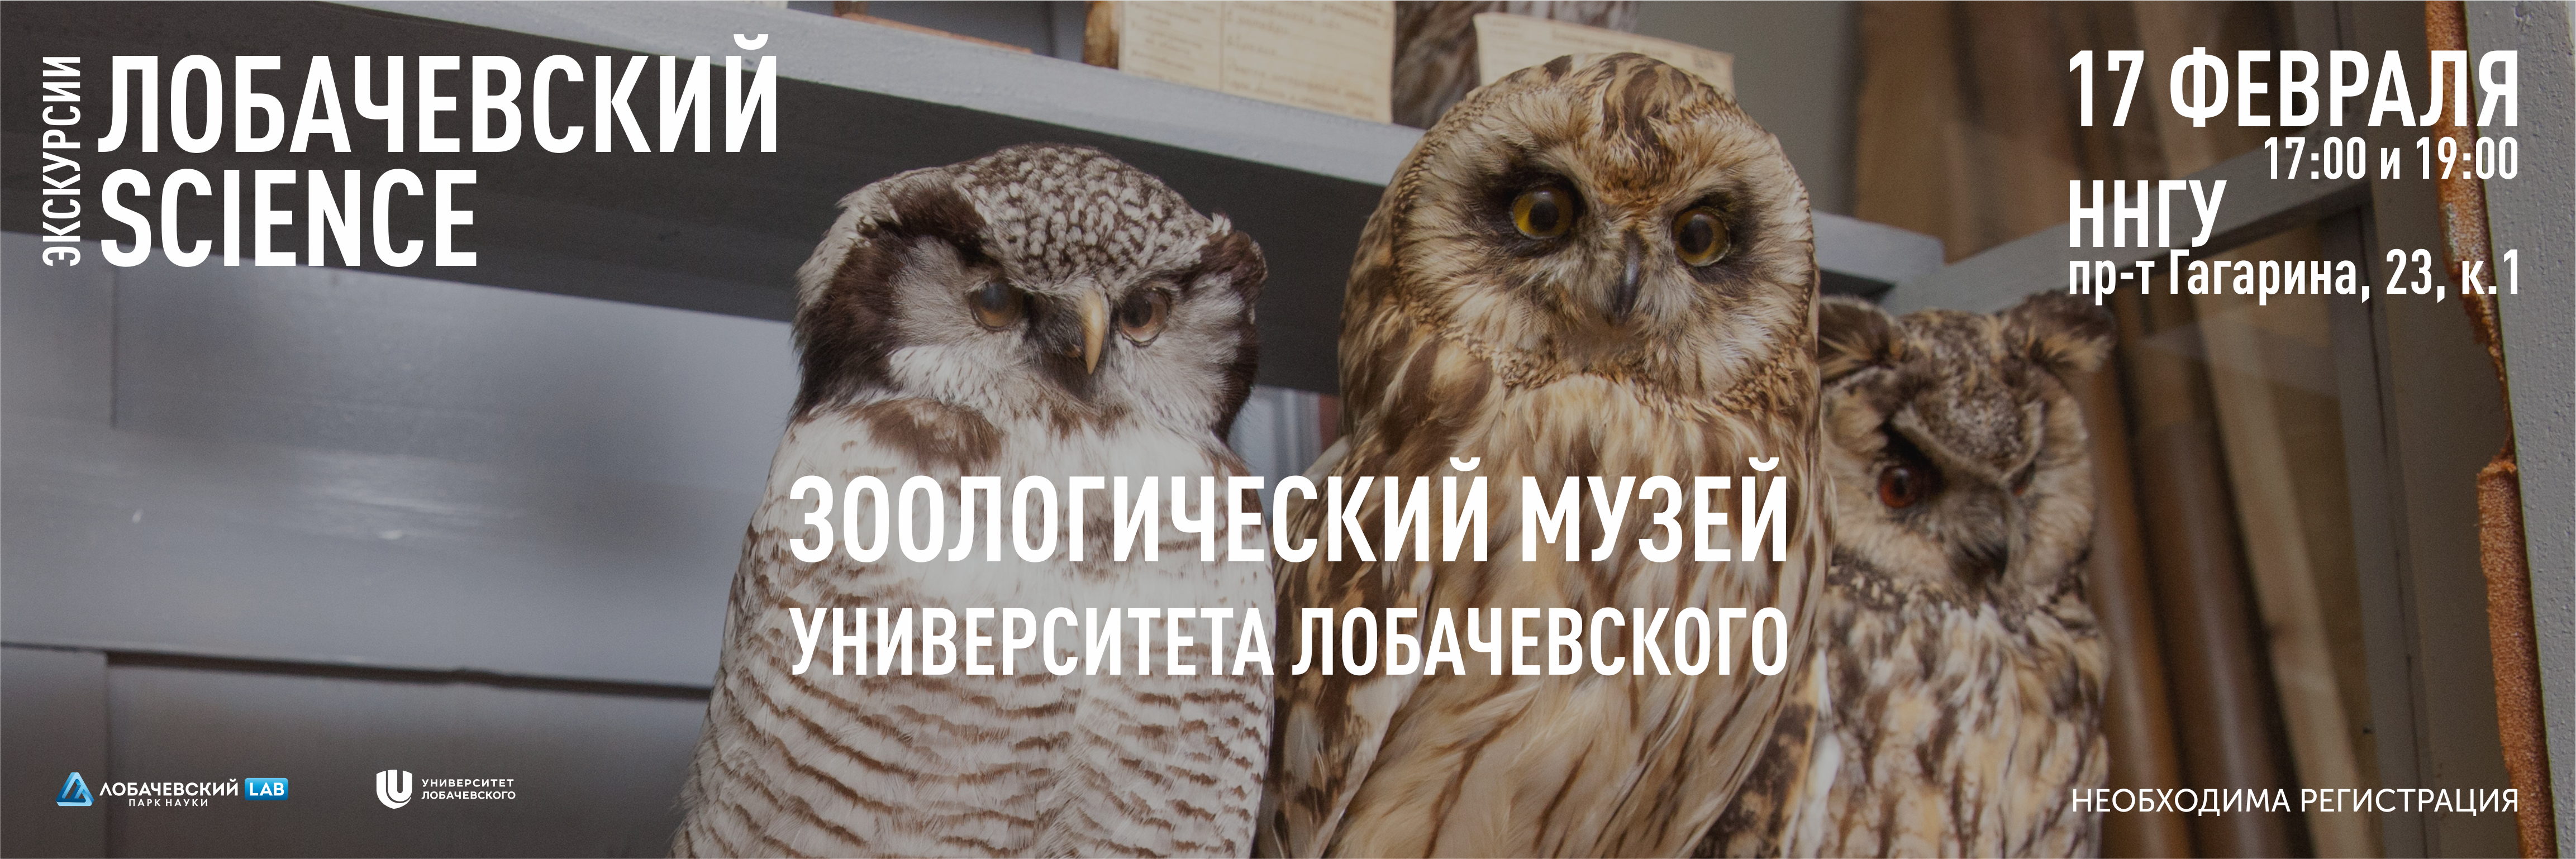 Экскурсия в Зоологический музей Университета Лобачевского